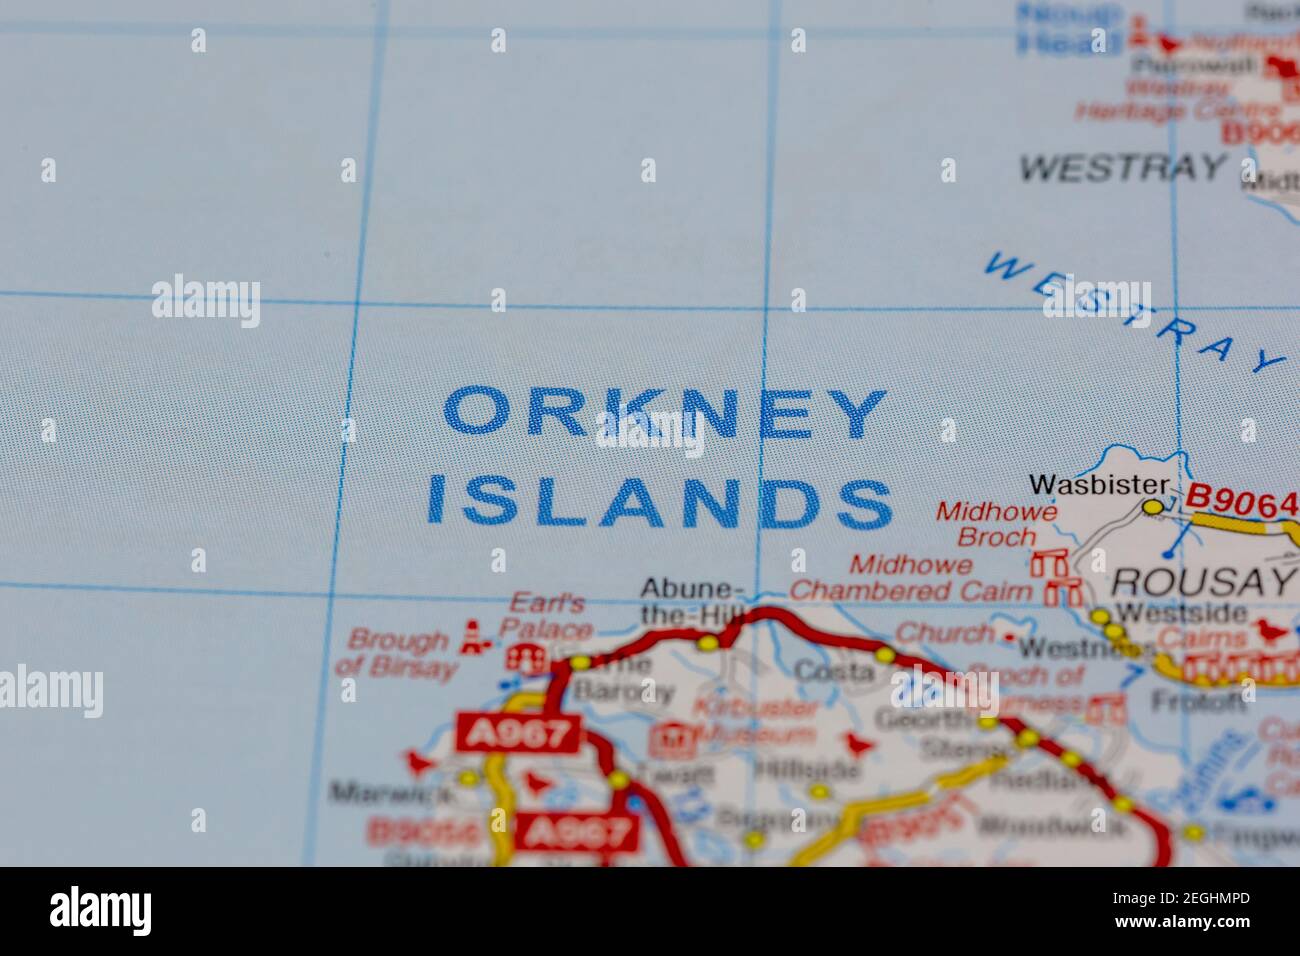 el orkney y sus alrededores se muestran en un mapa de carreteras o mapa geográfico Foto de stock